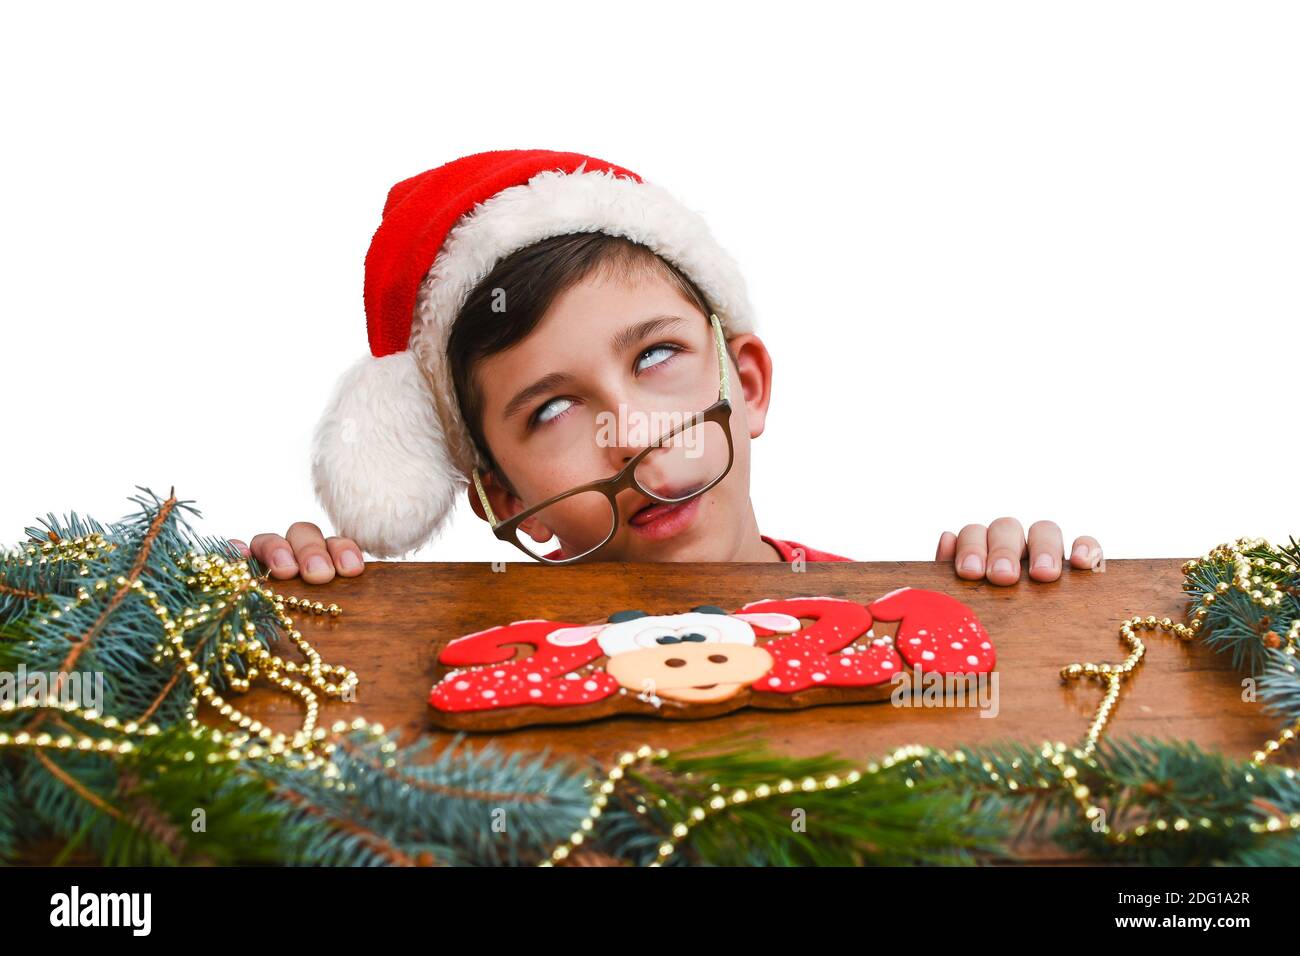 Un garçon de 10-13 ans dans un chapeau de Noël rouge attend le nouvel an ou Noël. Garçon roule les yeux. En attente de nuit de Noël, de vacances Banque D'Images